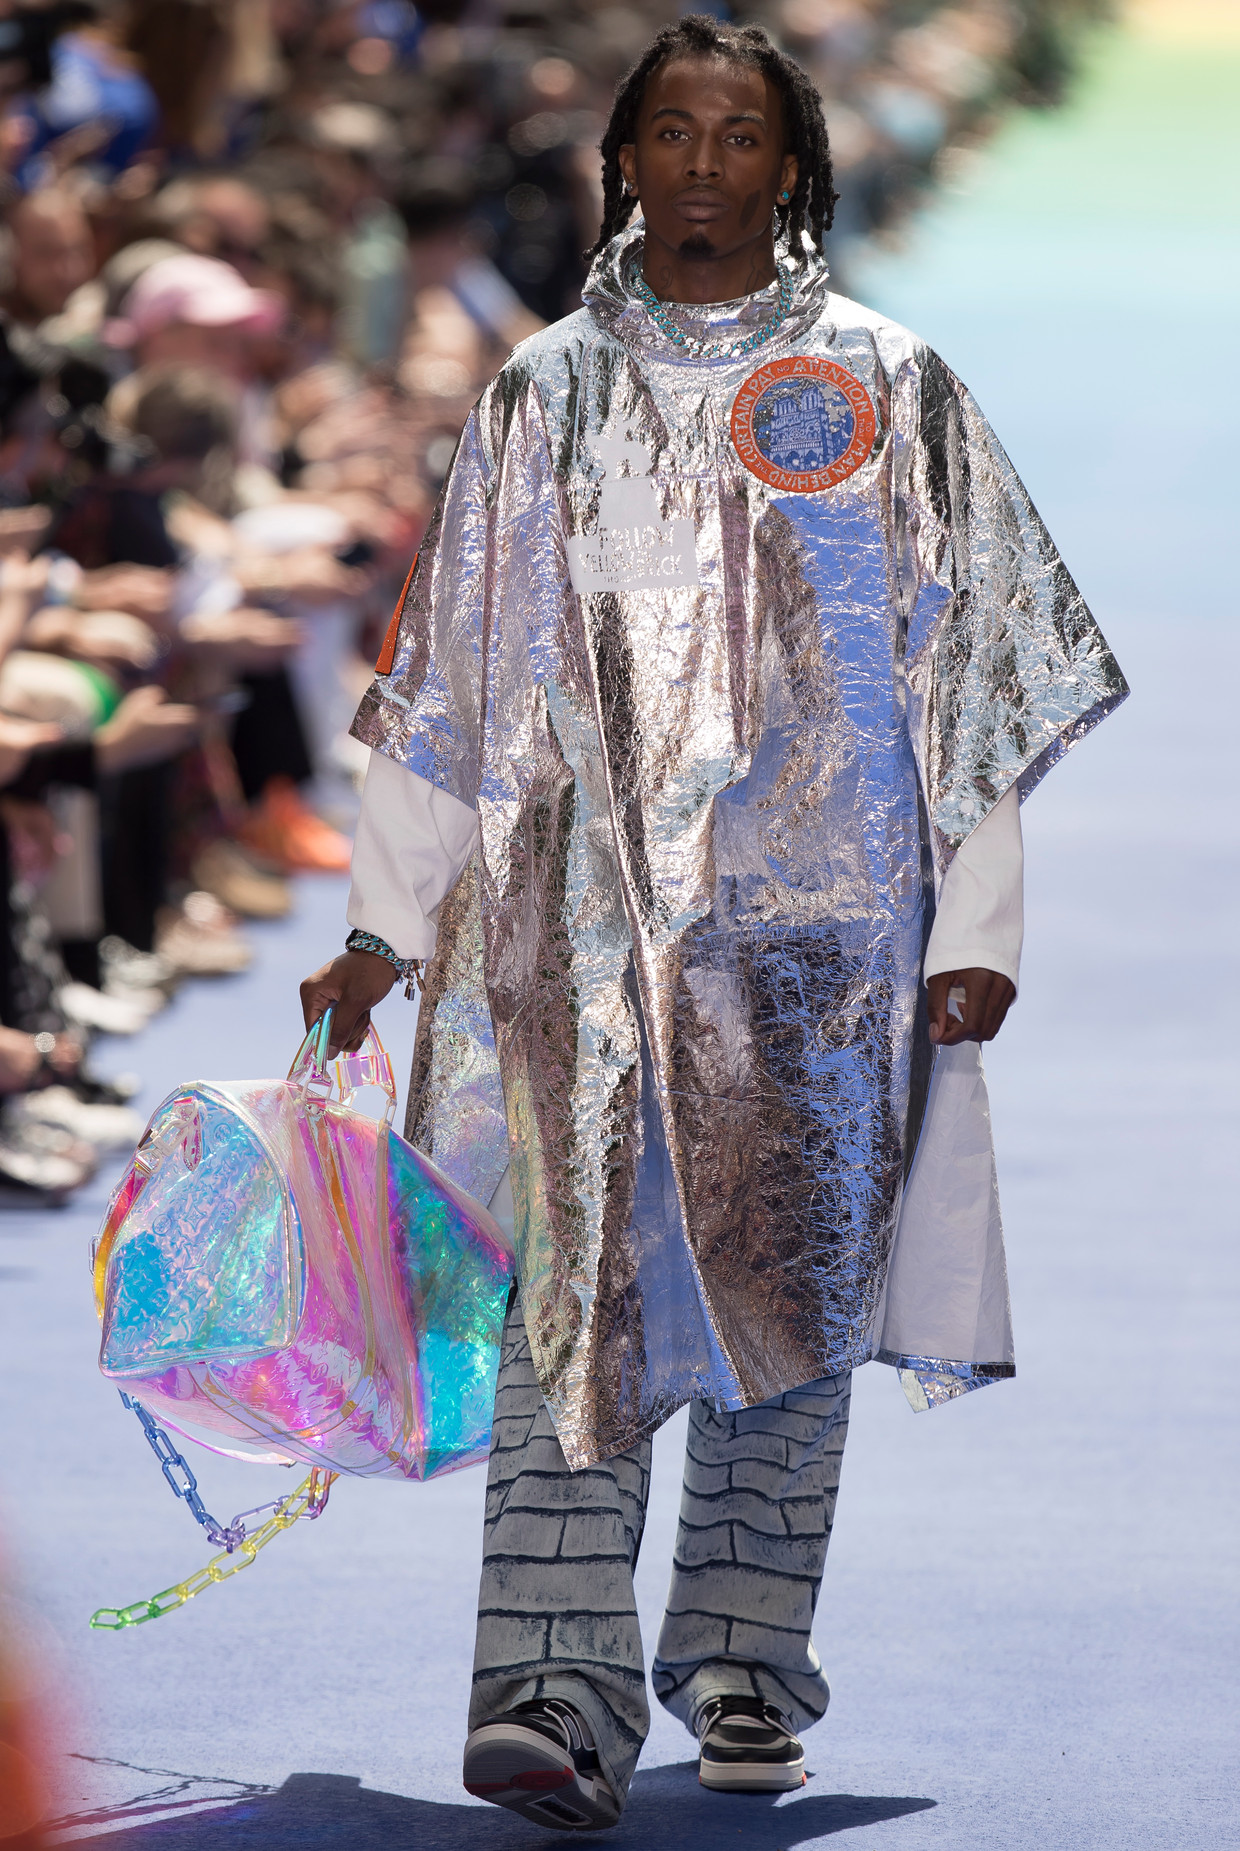 Deze tas van Louis Vuitton ga je overal zien deze zomer